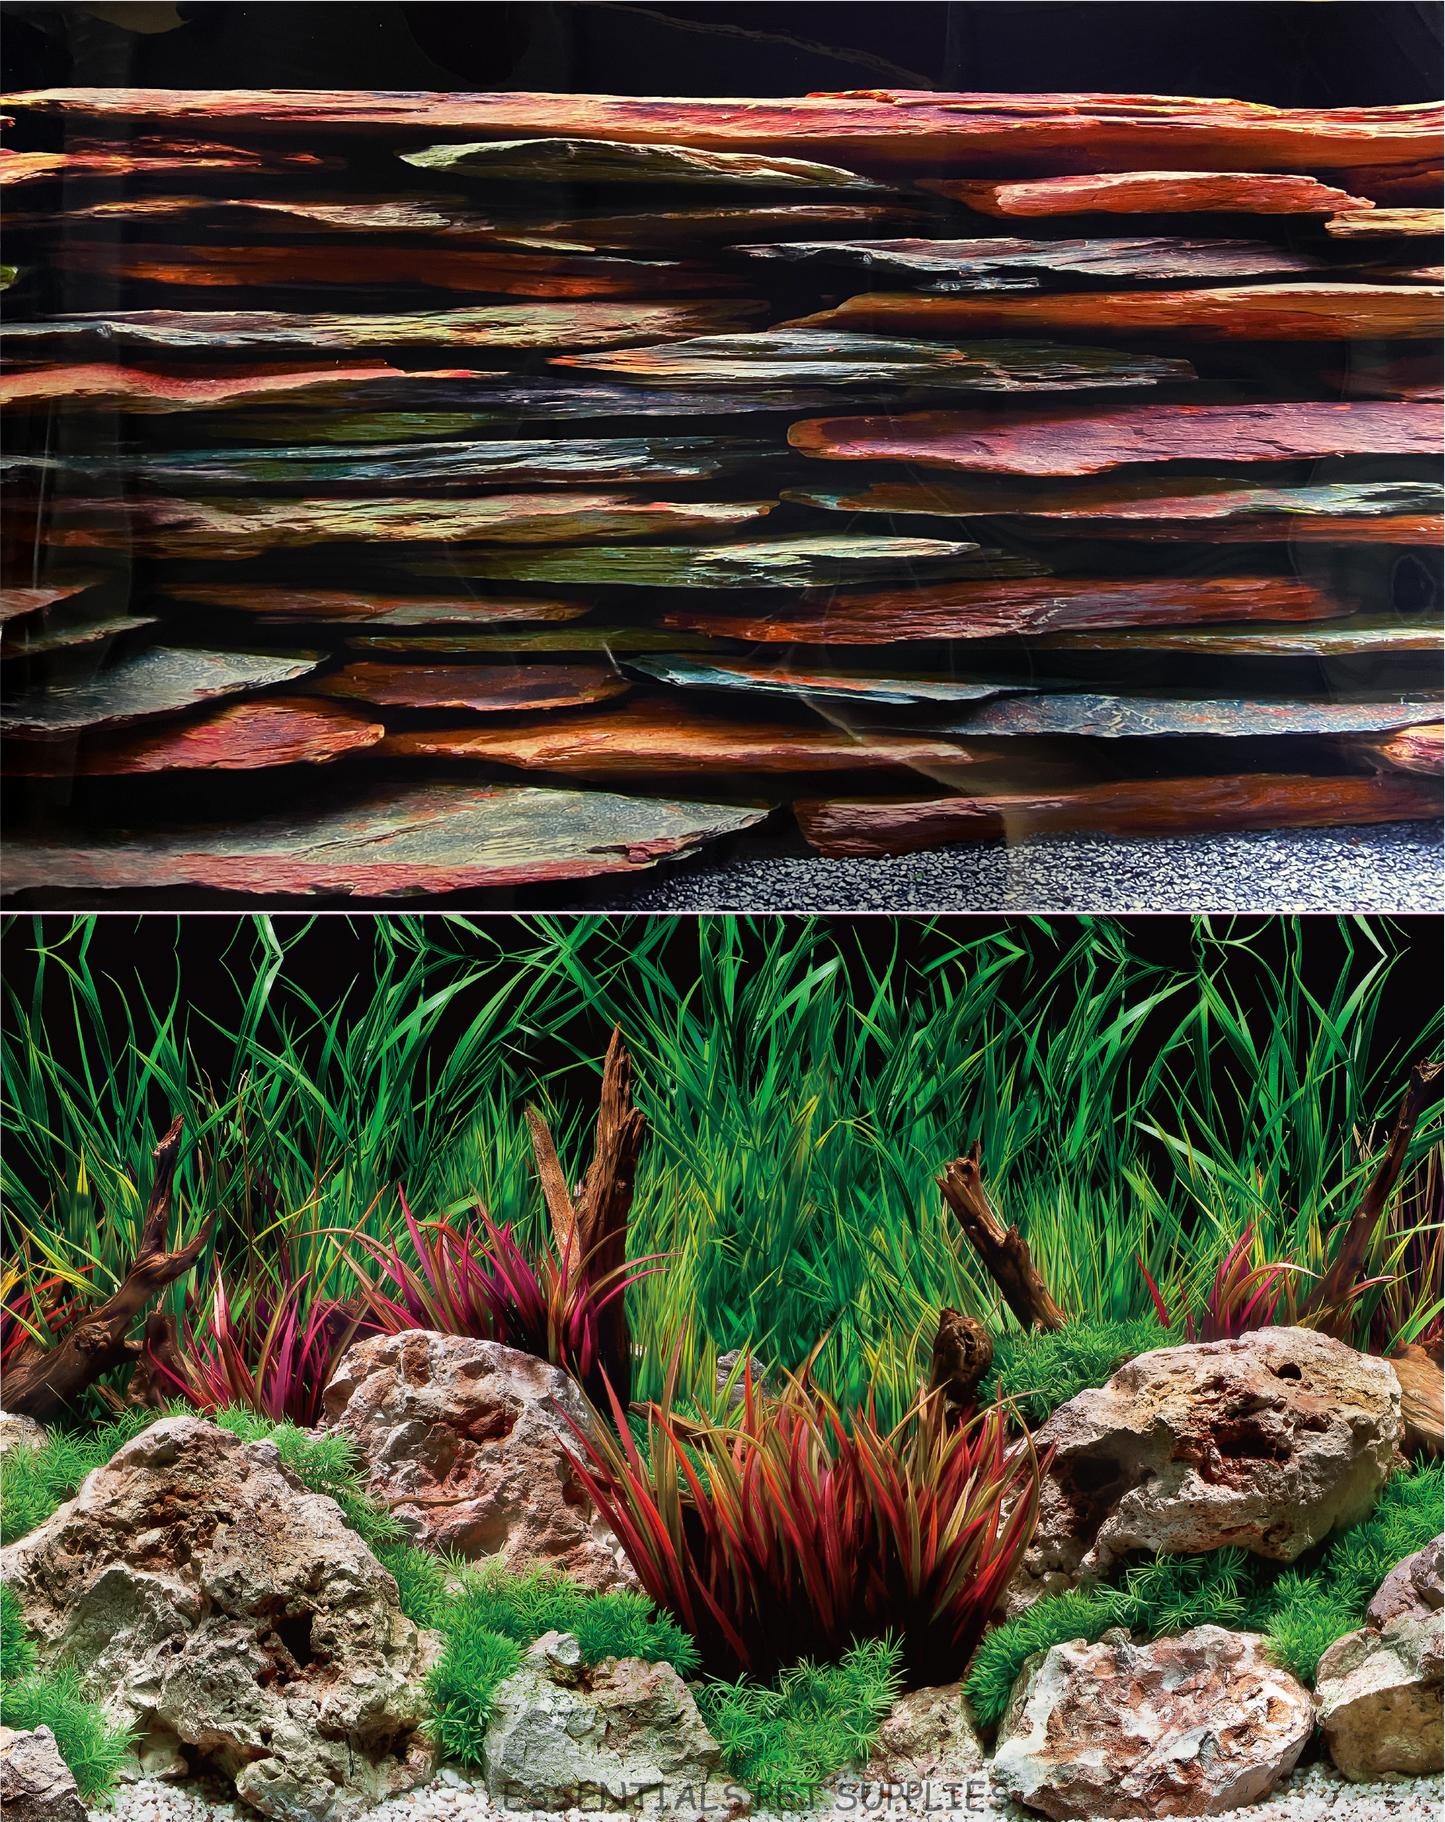 Aquarium Fish Tank Background Double Side Poster 18"(45cm)*4ft(122cm)